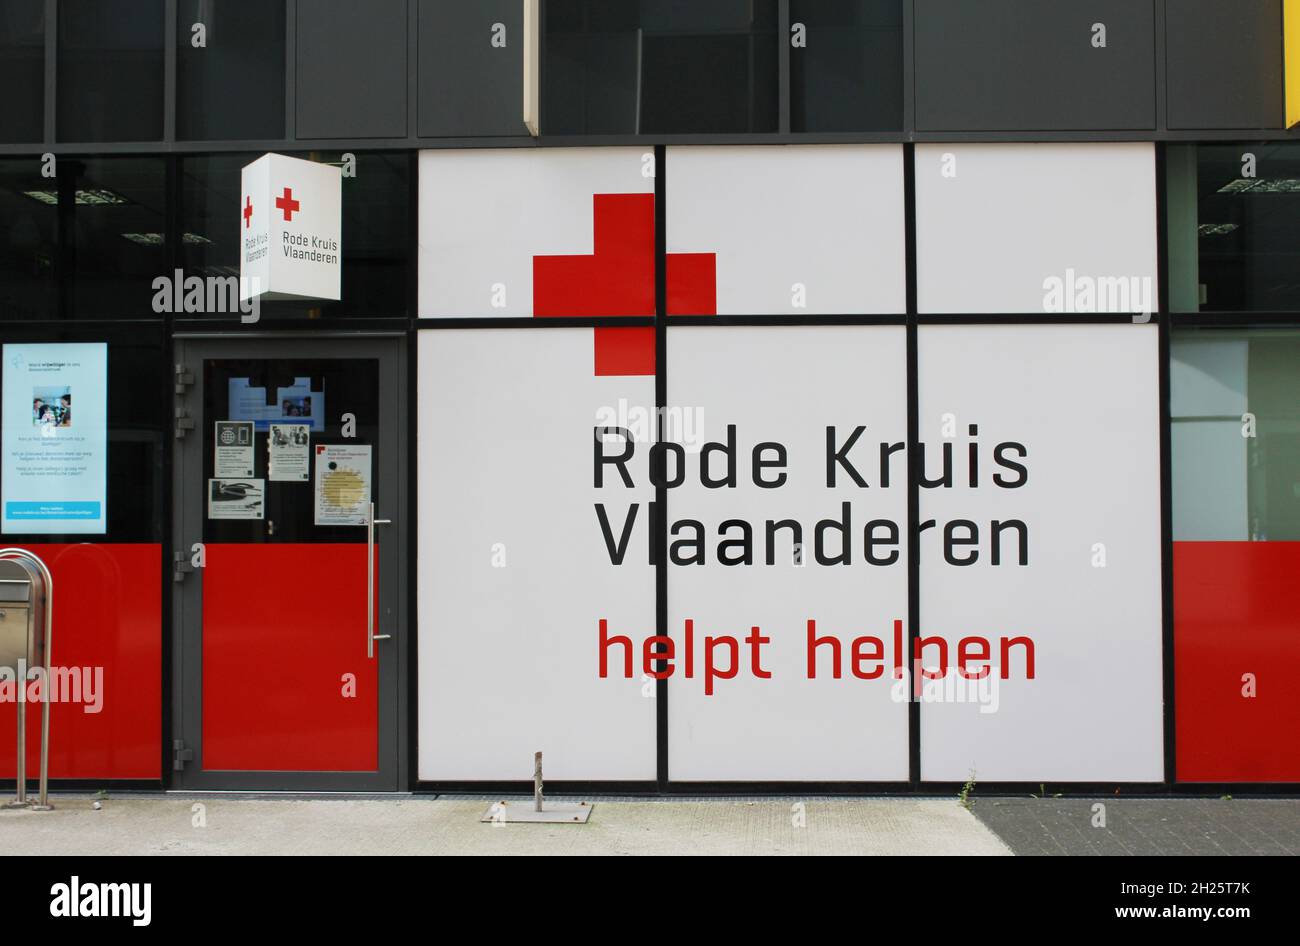 AALST, BELGIQUE, 10 OCTOBRE 2021 : vue extérieure d'un centre d'aide de la Croix-Rouge flamande en Flandre.La Croix-Rouge flamande est une organisation volontaire et p Banque D'Images